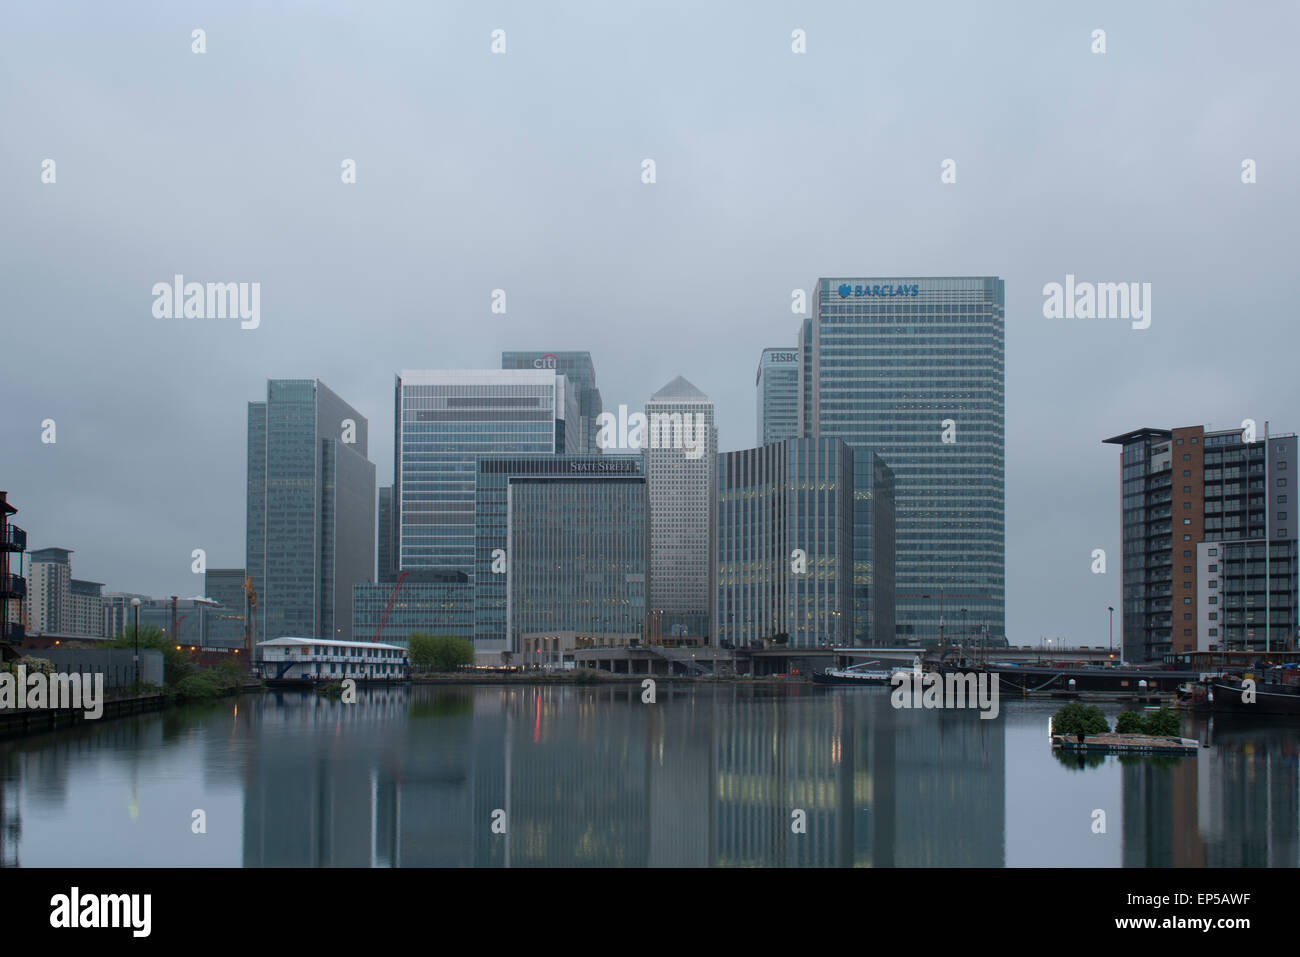 [Canary Wharf] Londra [distretto finanziario] Finanza. Credito: lee ramsden / alamy Foto Stock